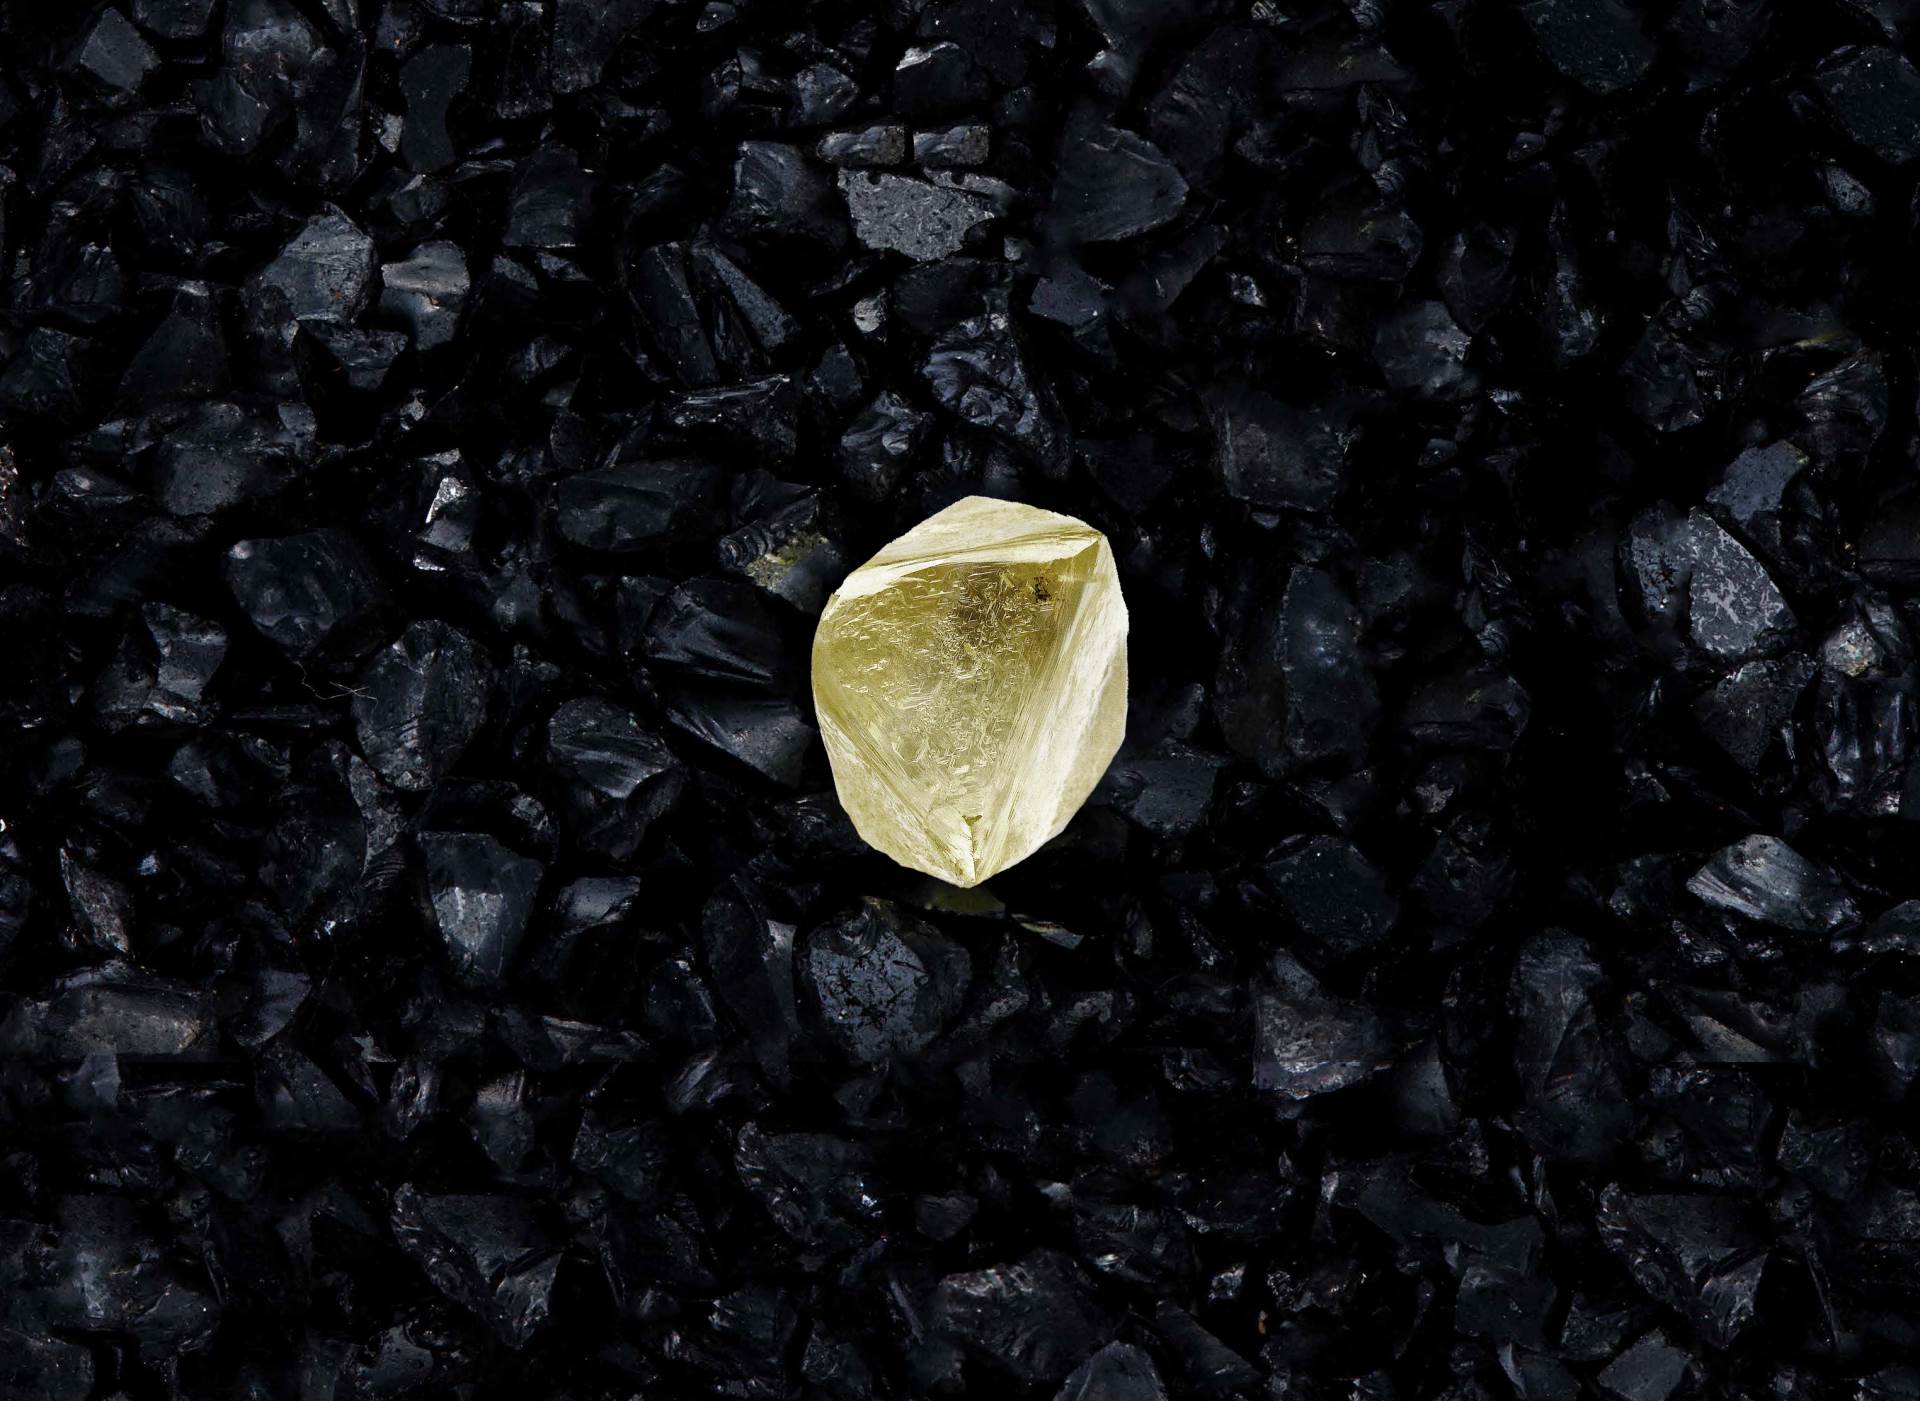  Oroman dijamant izvađen u Sibiru: Čudo u Jakutiji nazvano - Sputnjik V! 